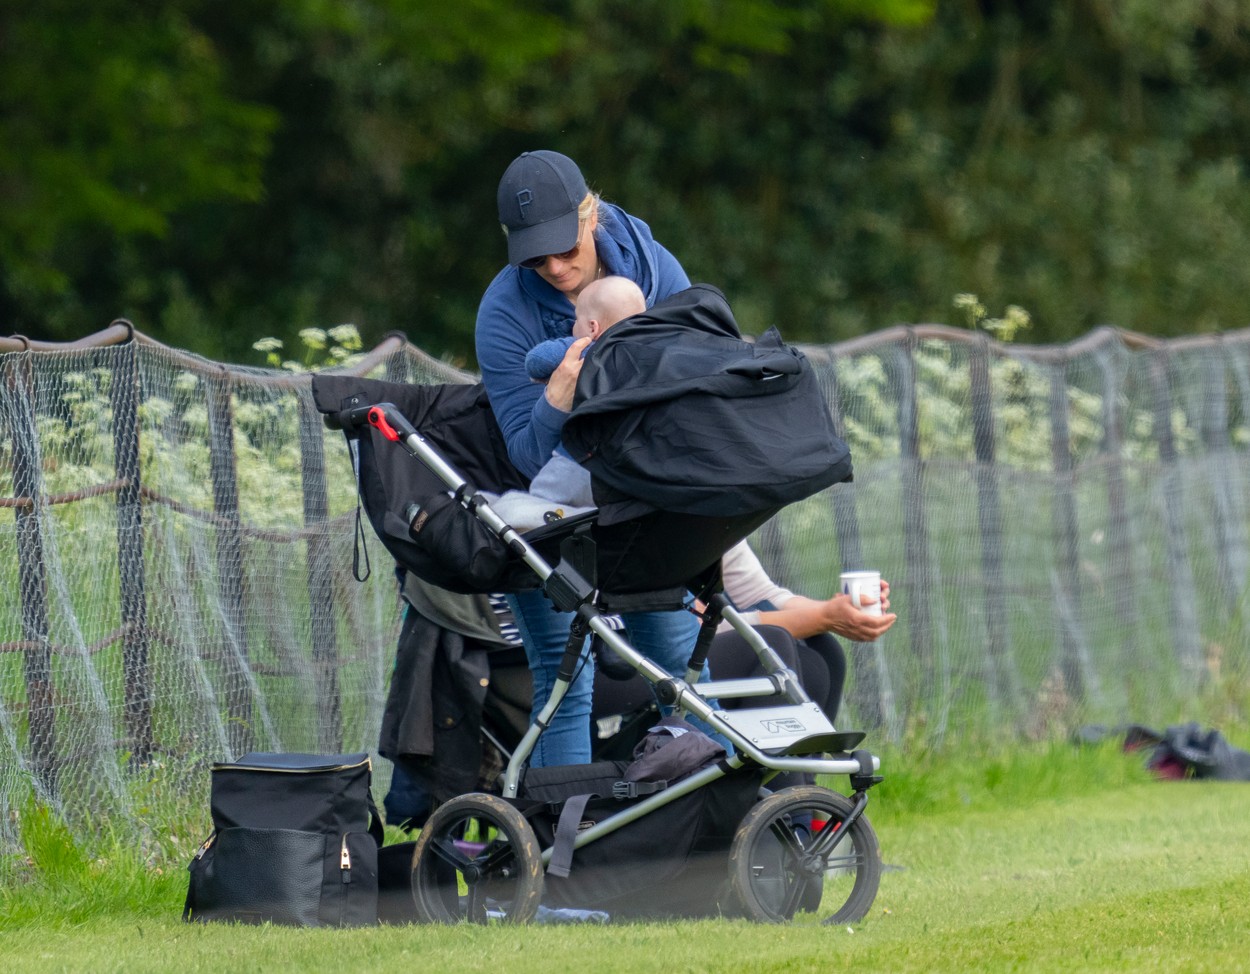 Zara Tindall, în timp ce își pune bebelușul în cărucior, la un eveniment de echitație